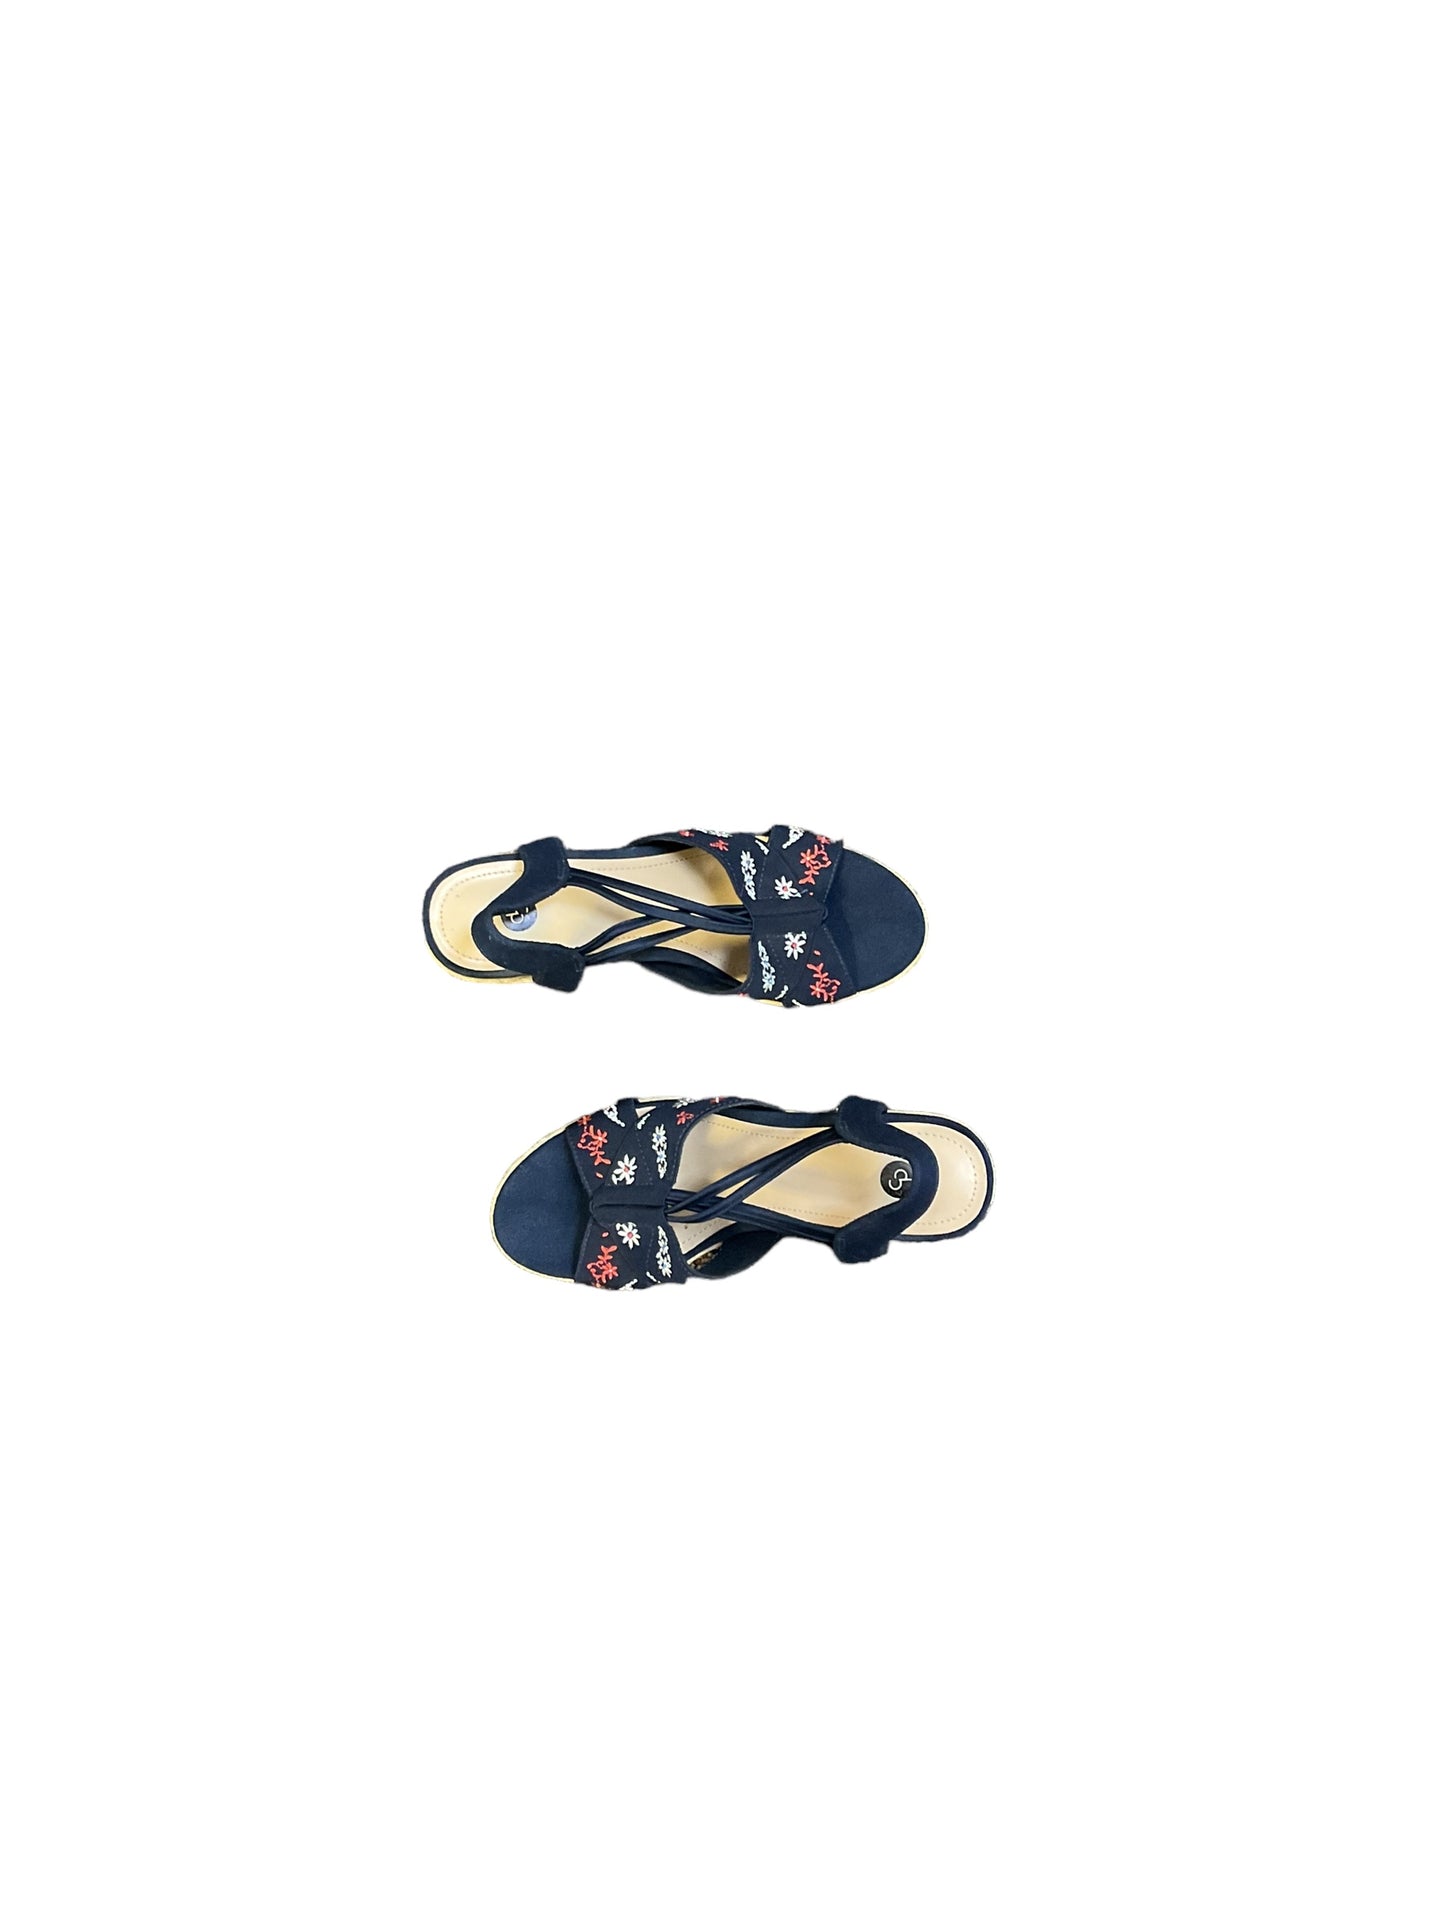 Sandals Heels Wedge By Dressbarn  Size: 6.5